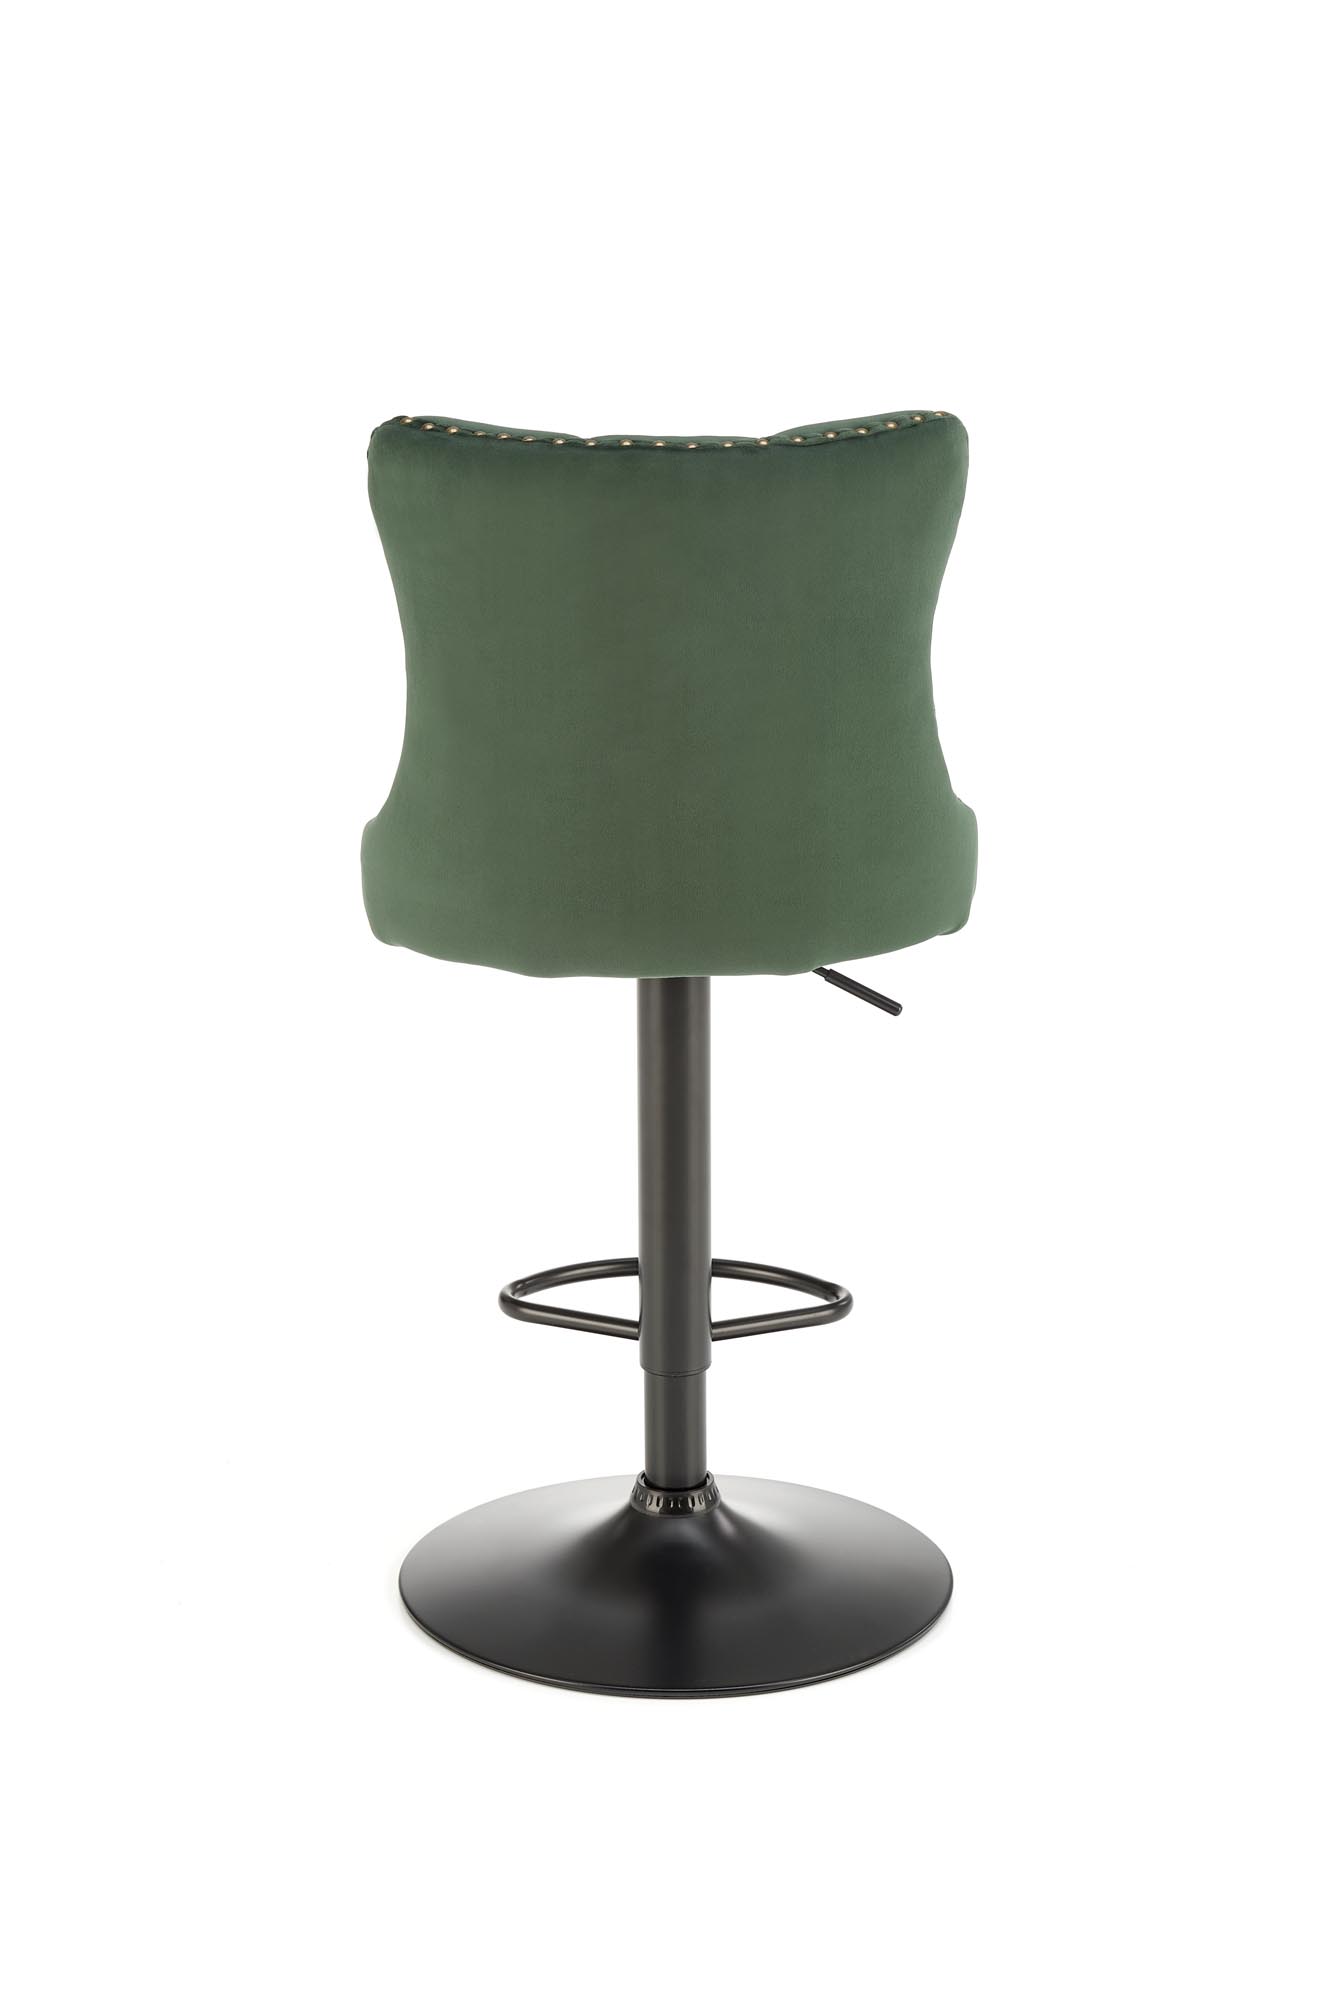 Scaun de bar H117 tapițat -  verde închis Barová židle čalouněná h117 - tmavý Zelený